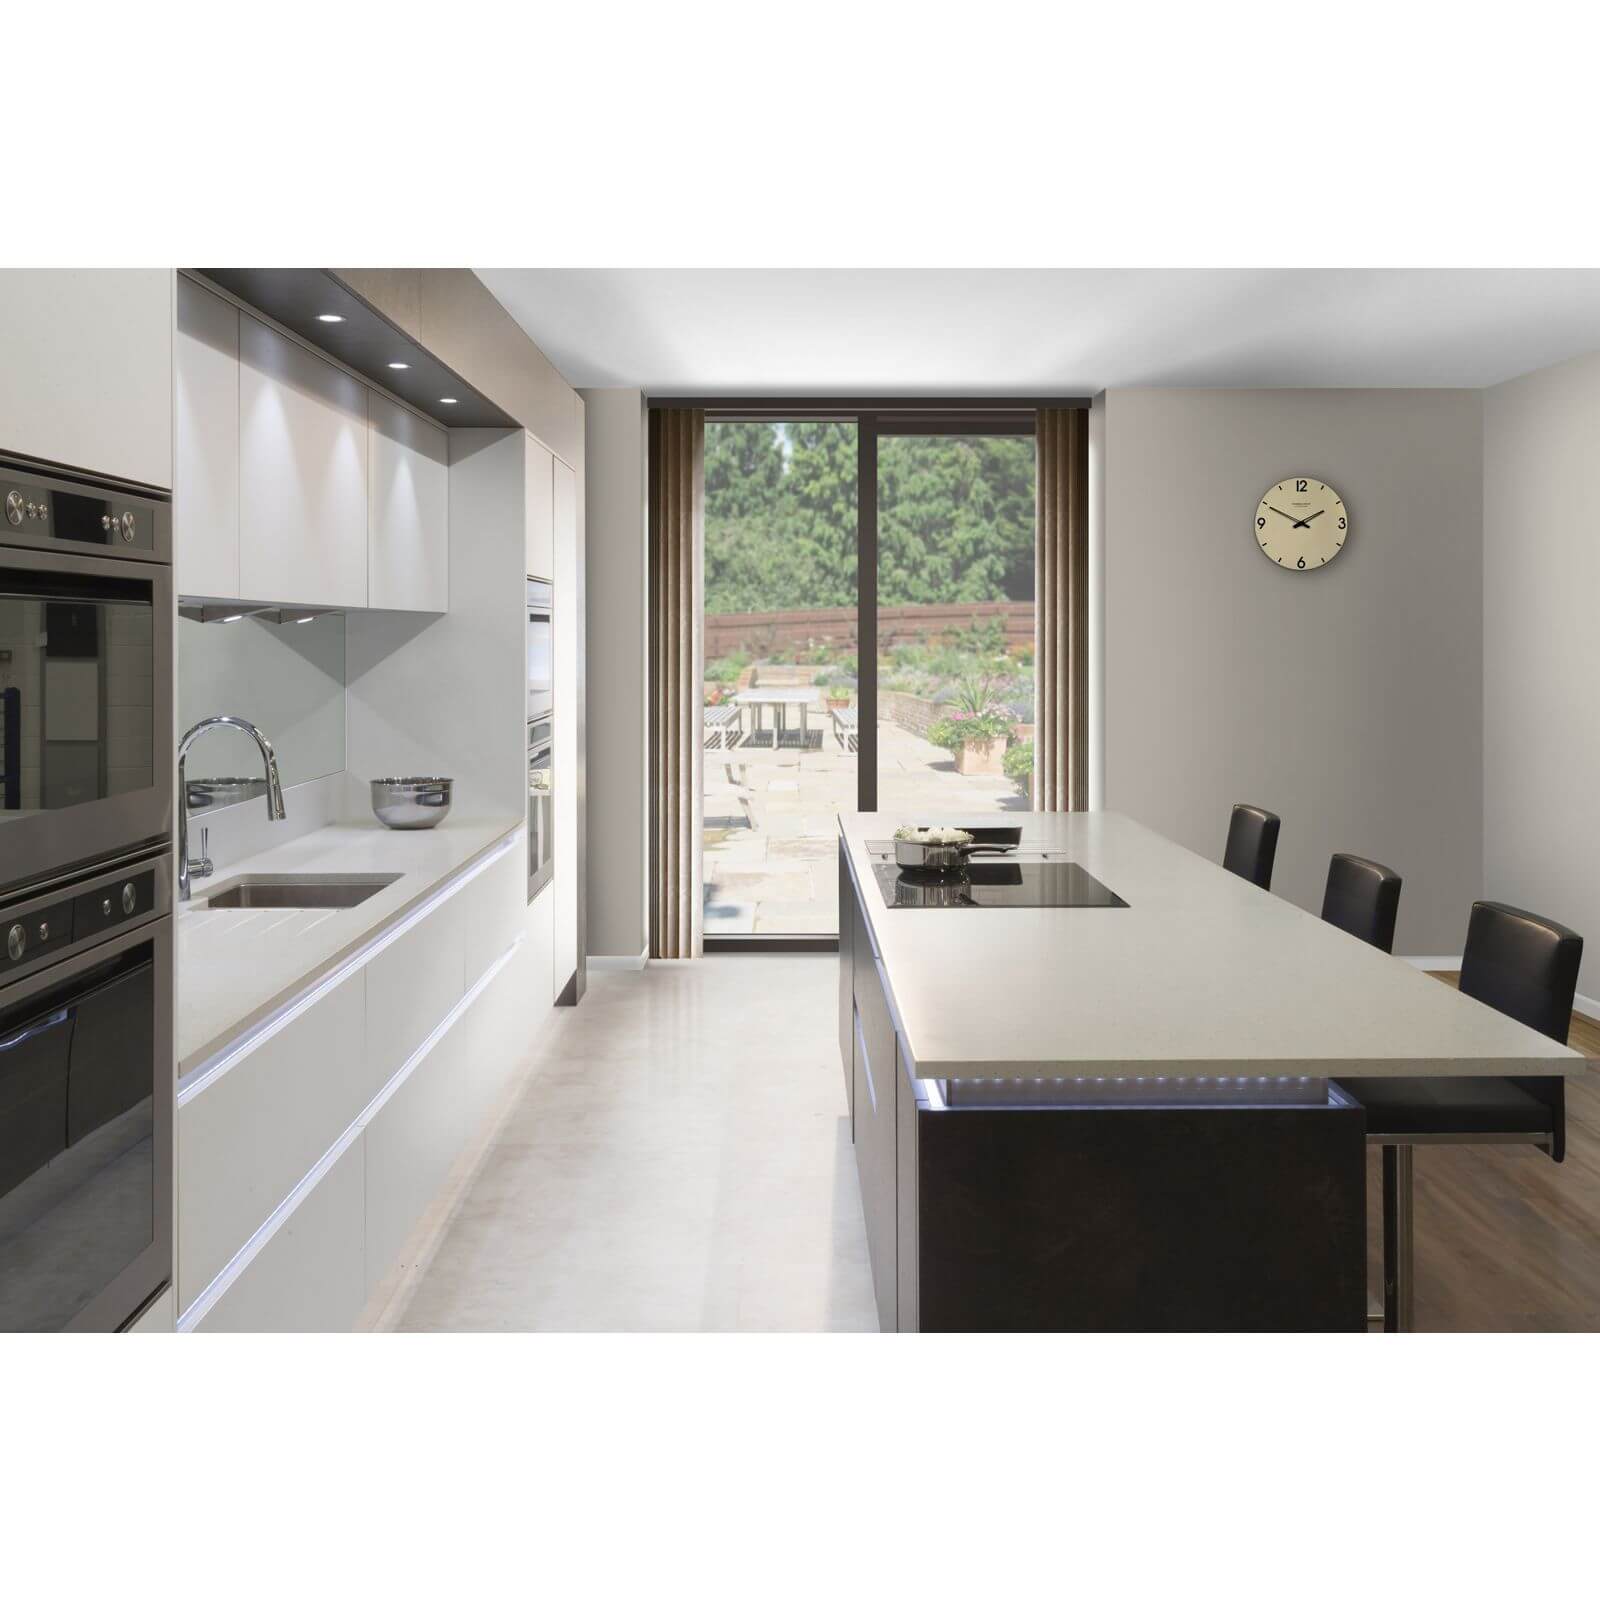 Minerva Grey Crystal Kitchen Worktop - 305 x 65 x 2.5cm